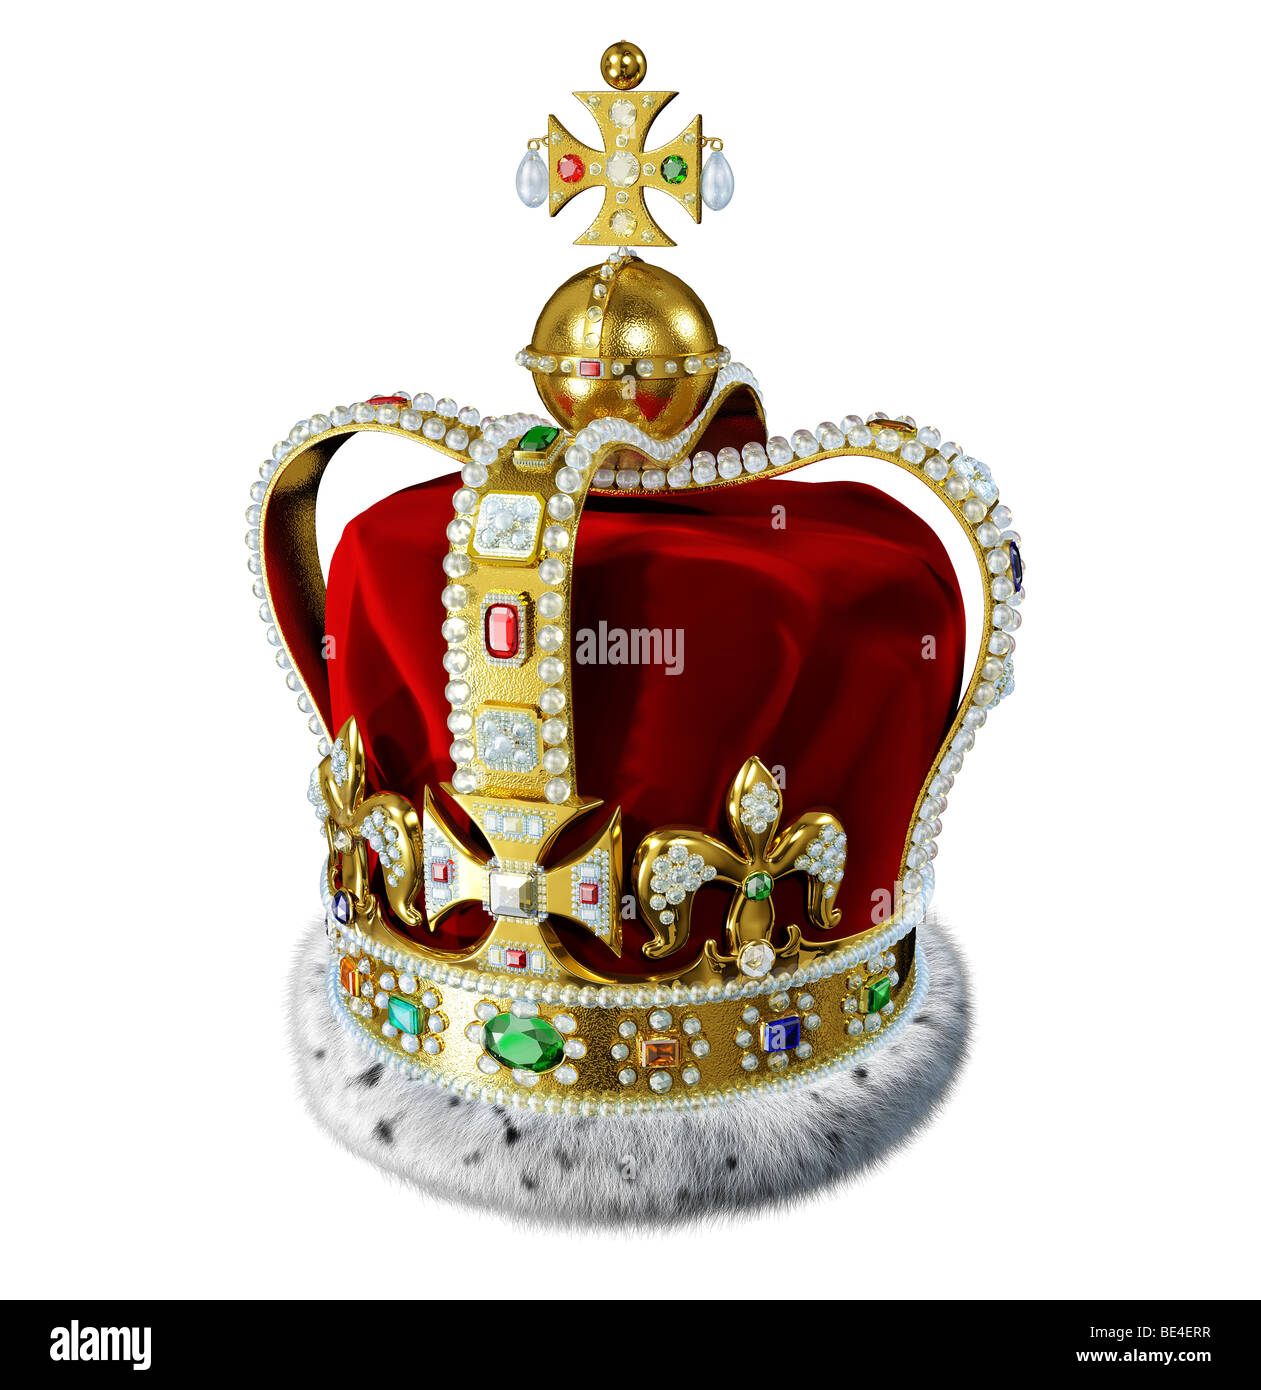 König Krone mit samt, Hermelin, Schmuck und kostbare Edelsteine Dekorationen Stockfoto